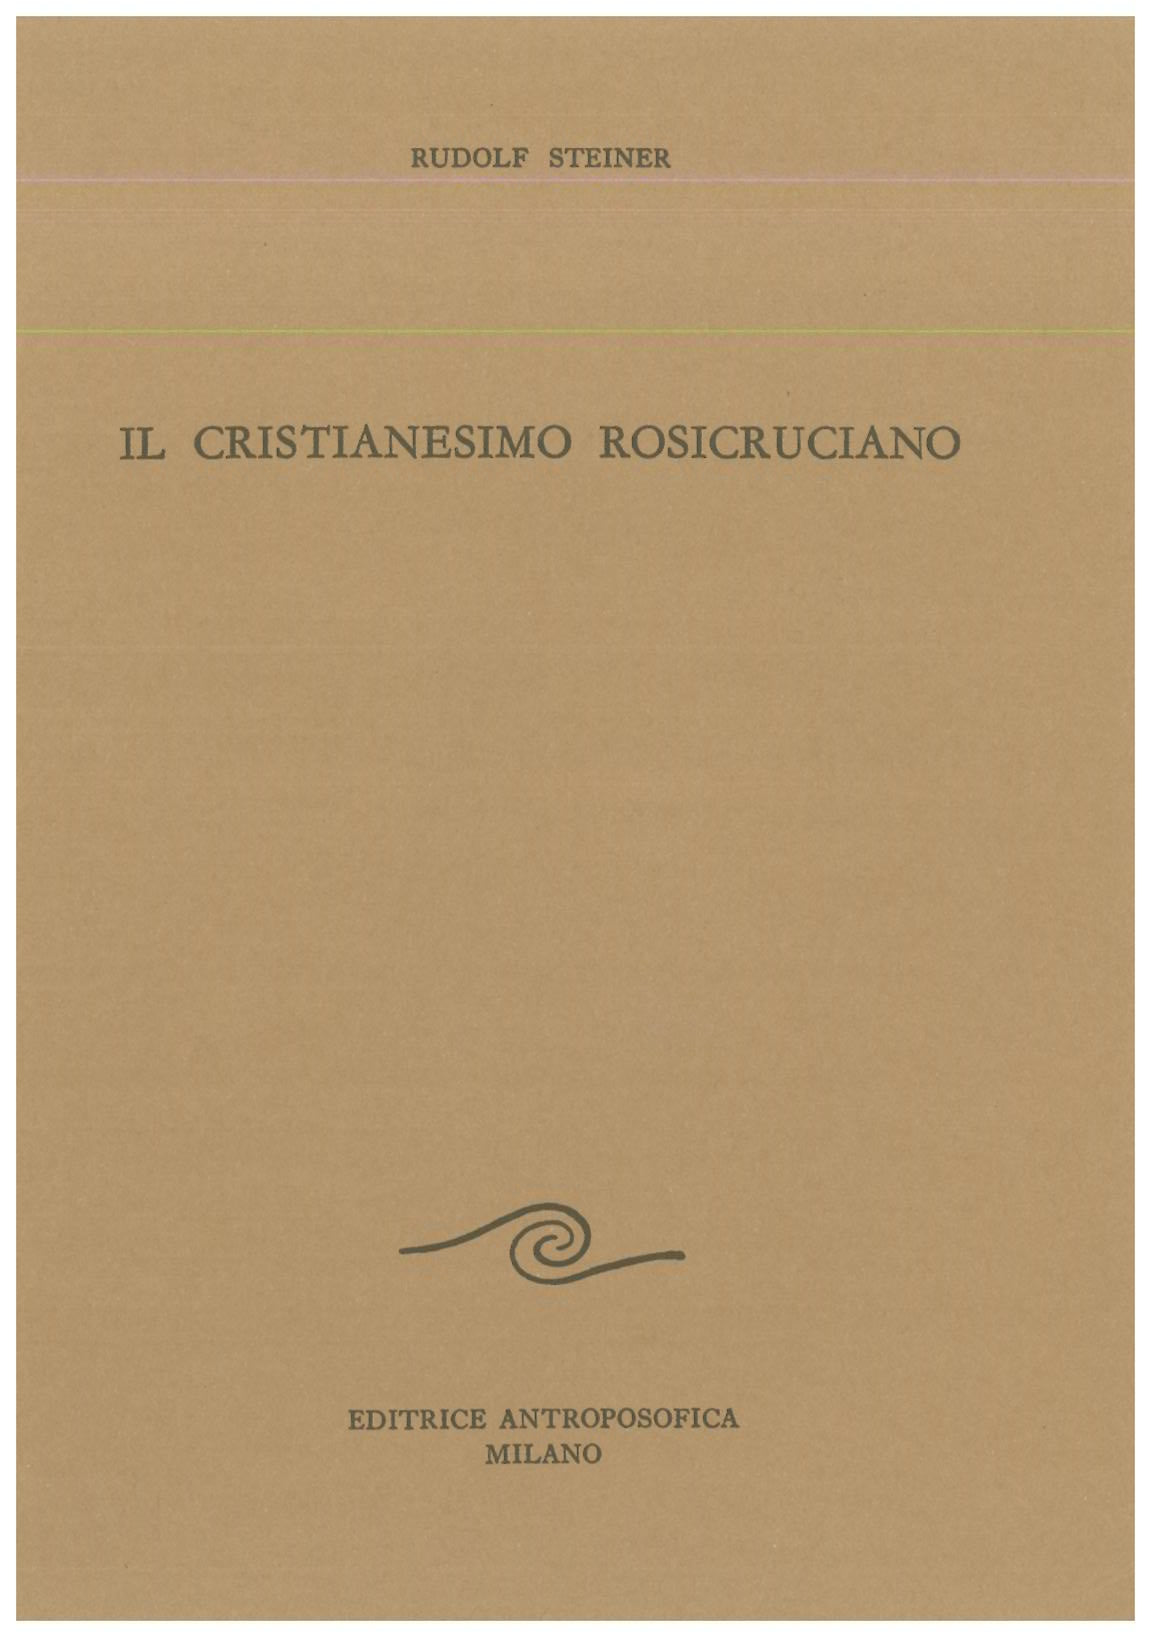 Il Cristianesimo Rosicruciano - Rudolf Steiner